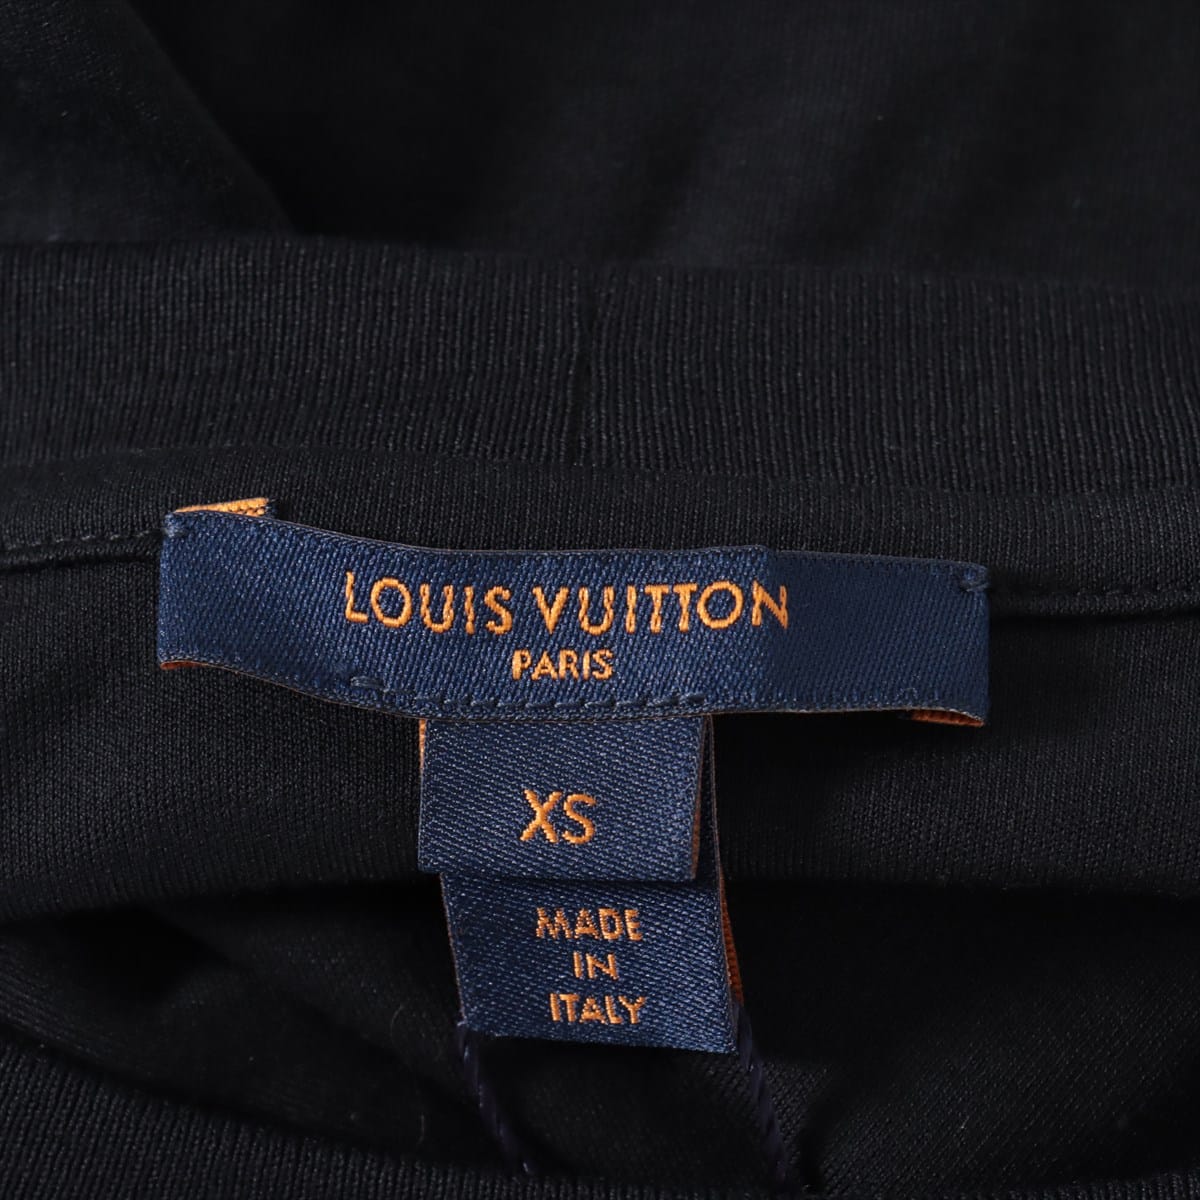 Louis Vuitton RW191A Cotton Dress XS Ladies' Navy blue  floral